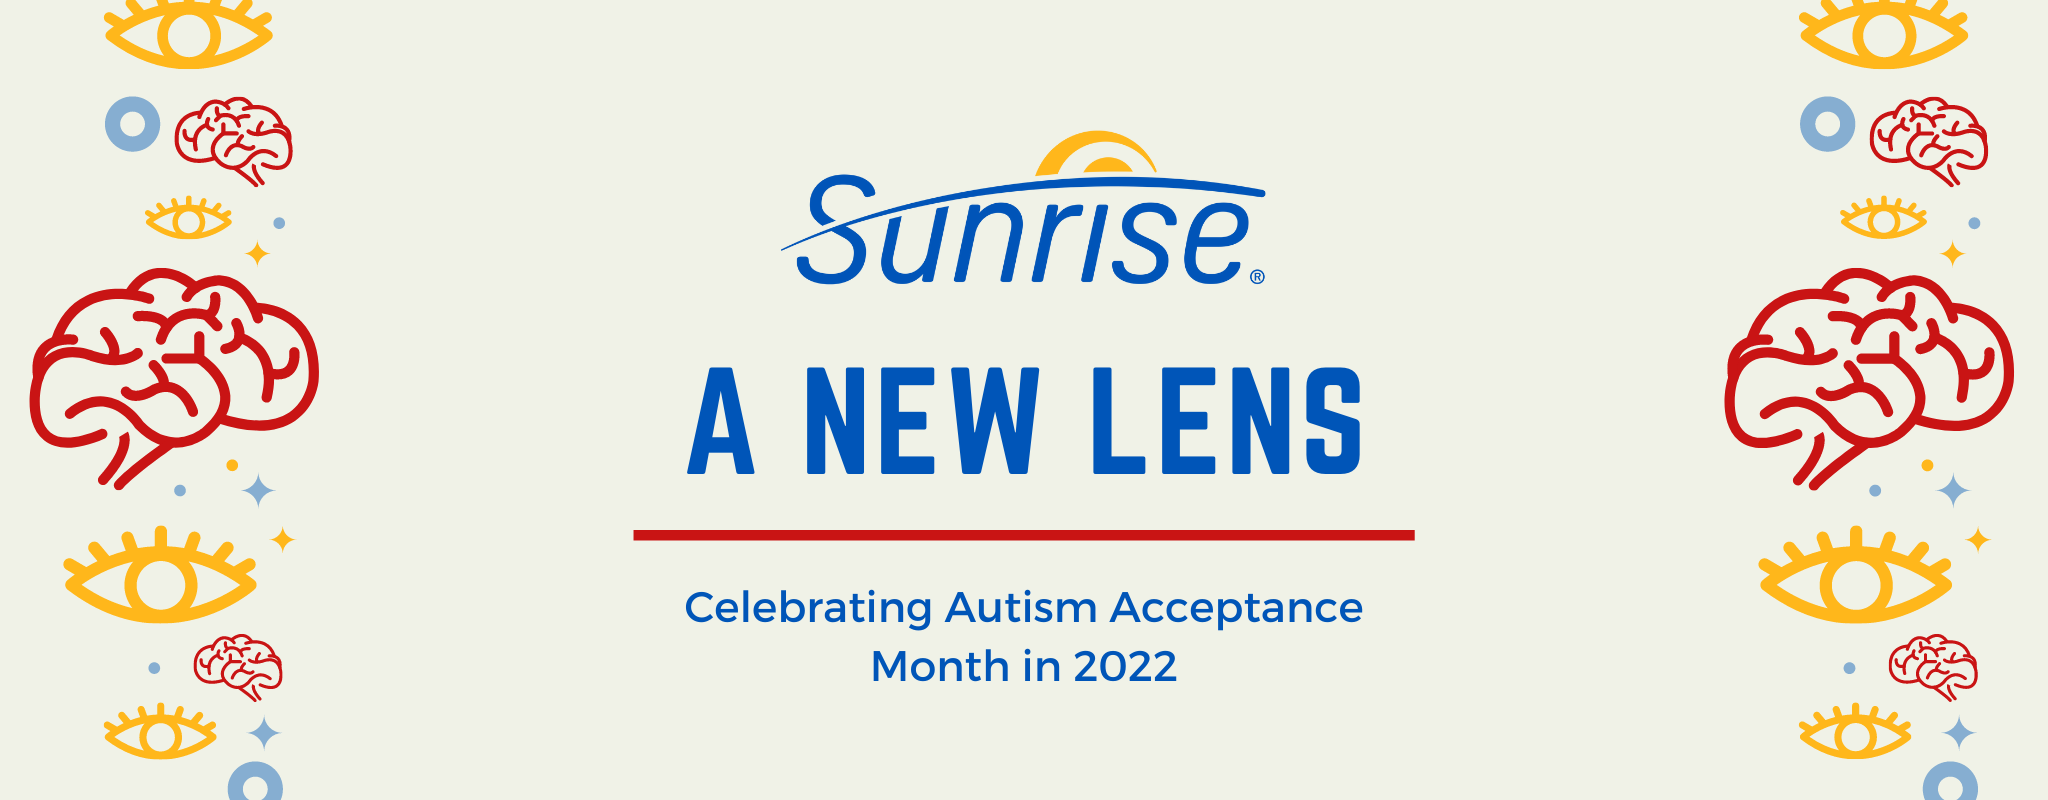 Mois de l'acceptation de l'autisme - Une nouvelle lentille